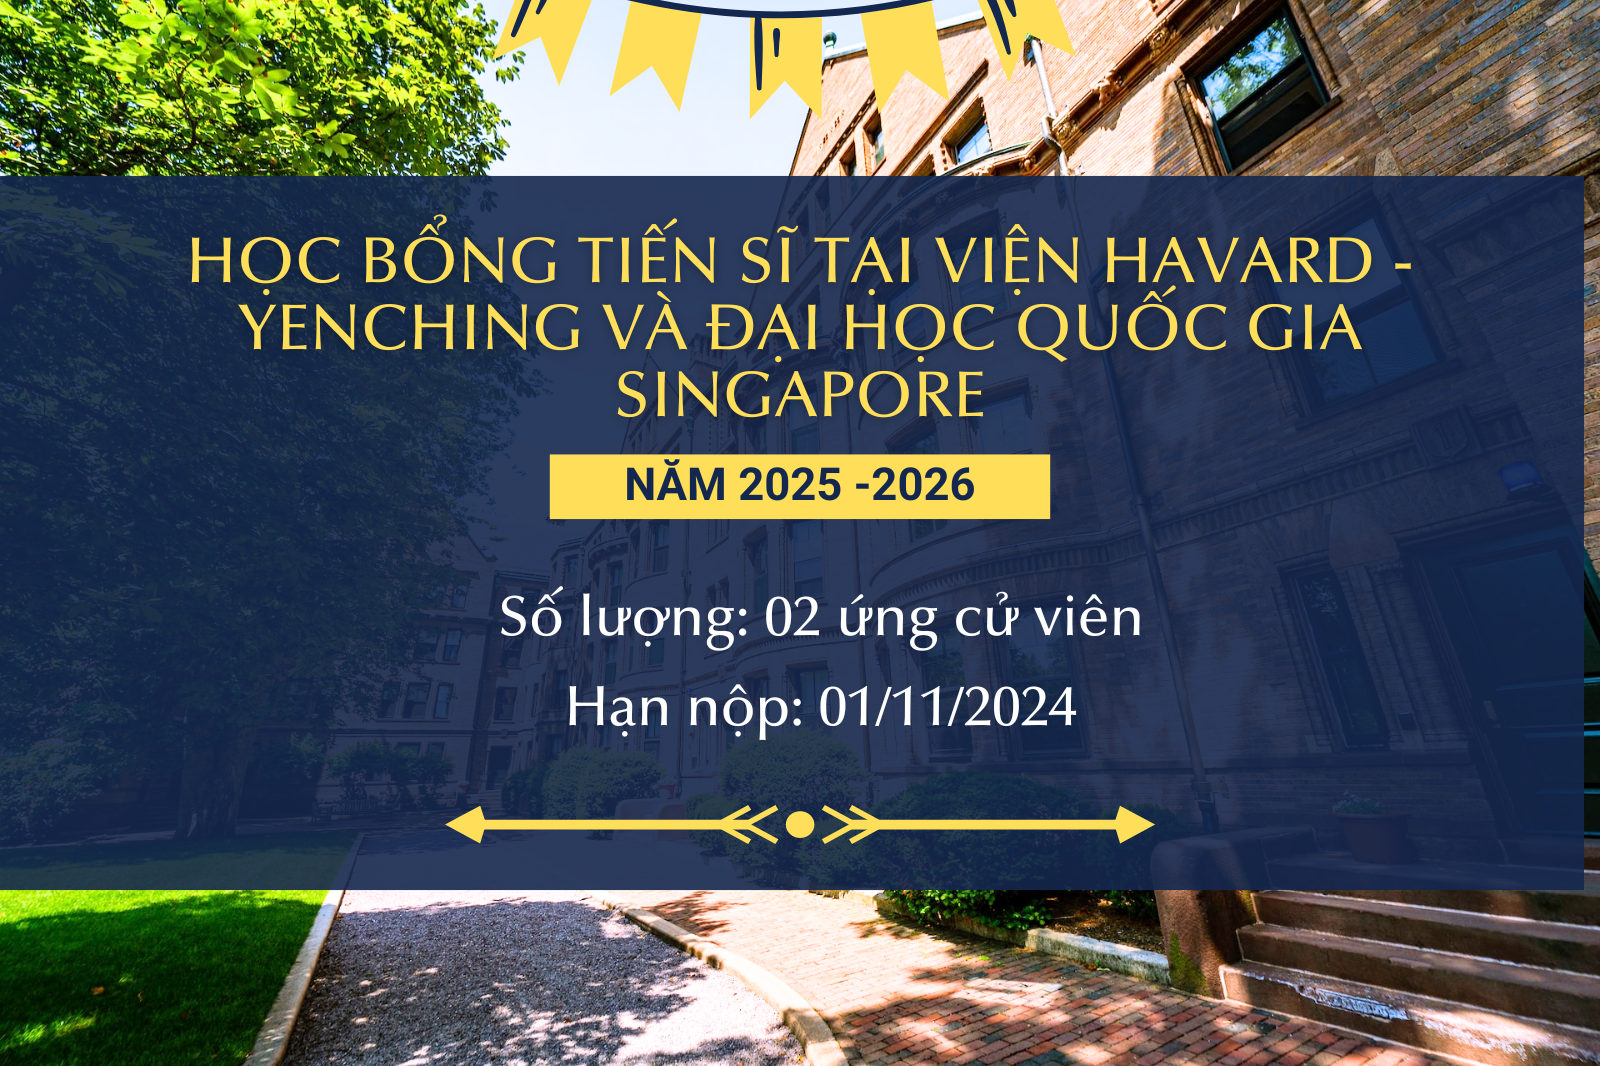 Học bổng tiến sĩ tại Viện Harvard - Yenching và Đại học Quốc gia Singapore dành cho các ứng viên đến từ USSH năm học 2025 - 2026